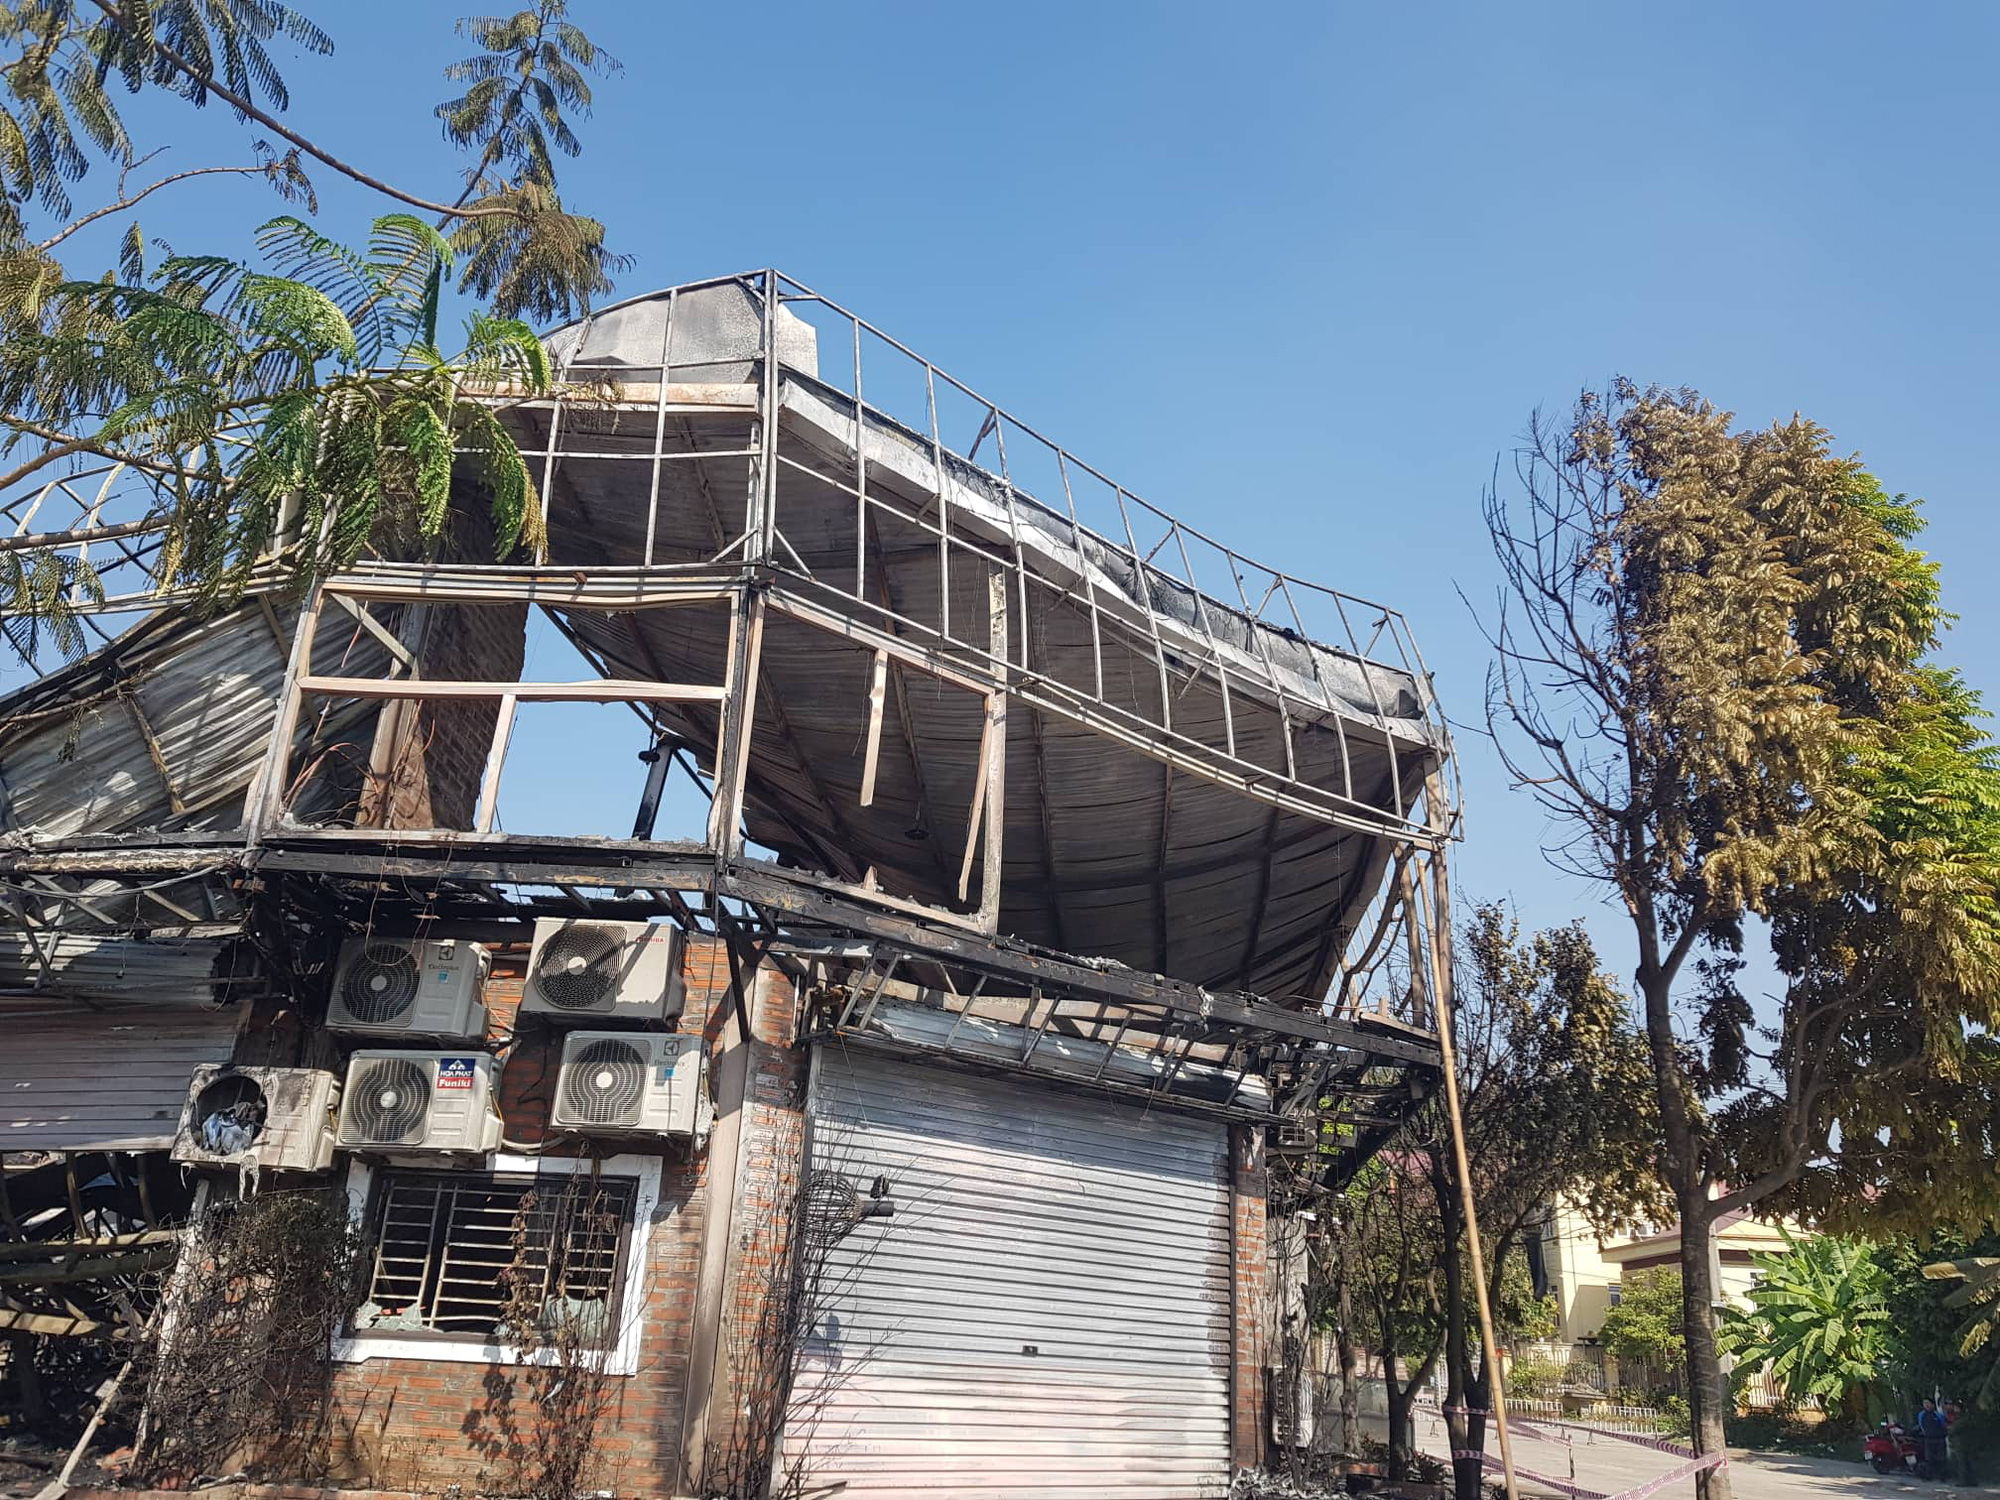 Kinh hoàng lời kể nhân chứng vụ cháy nhà hàng khiến 4 người tử vong tại Vĩnh Phúc - Ảnh 2.